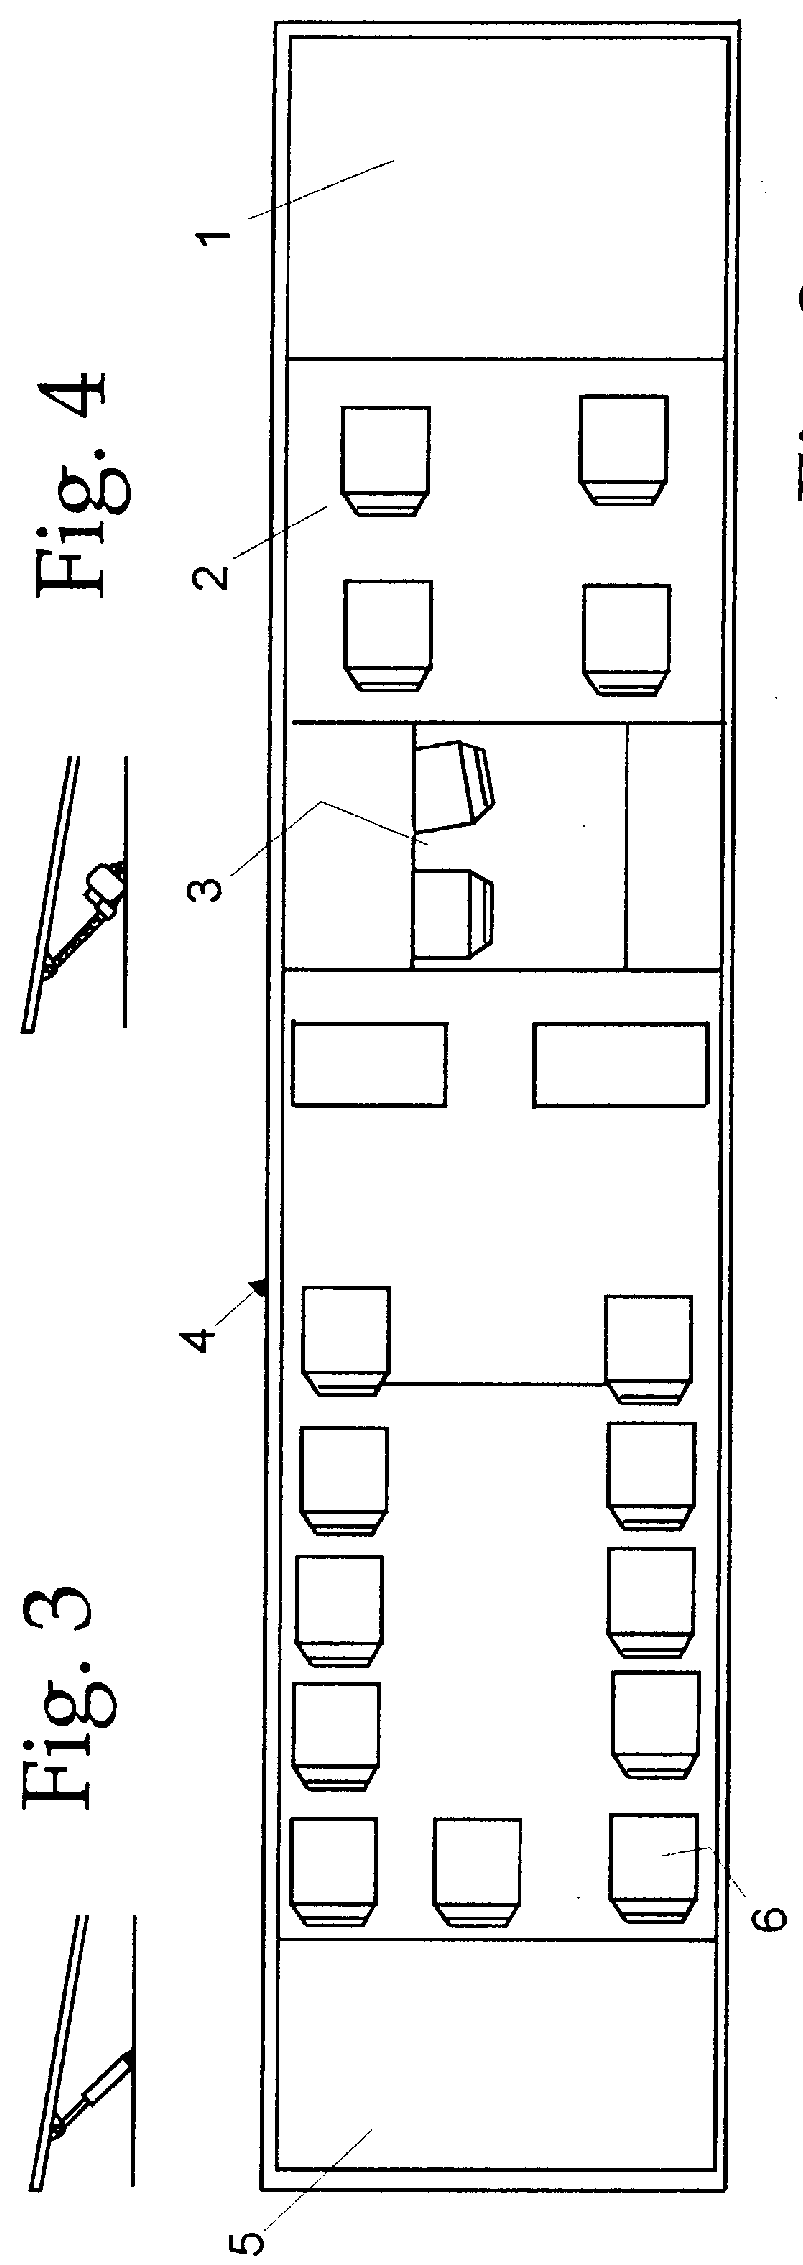 Arrangement in vehicle